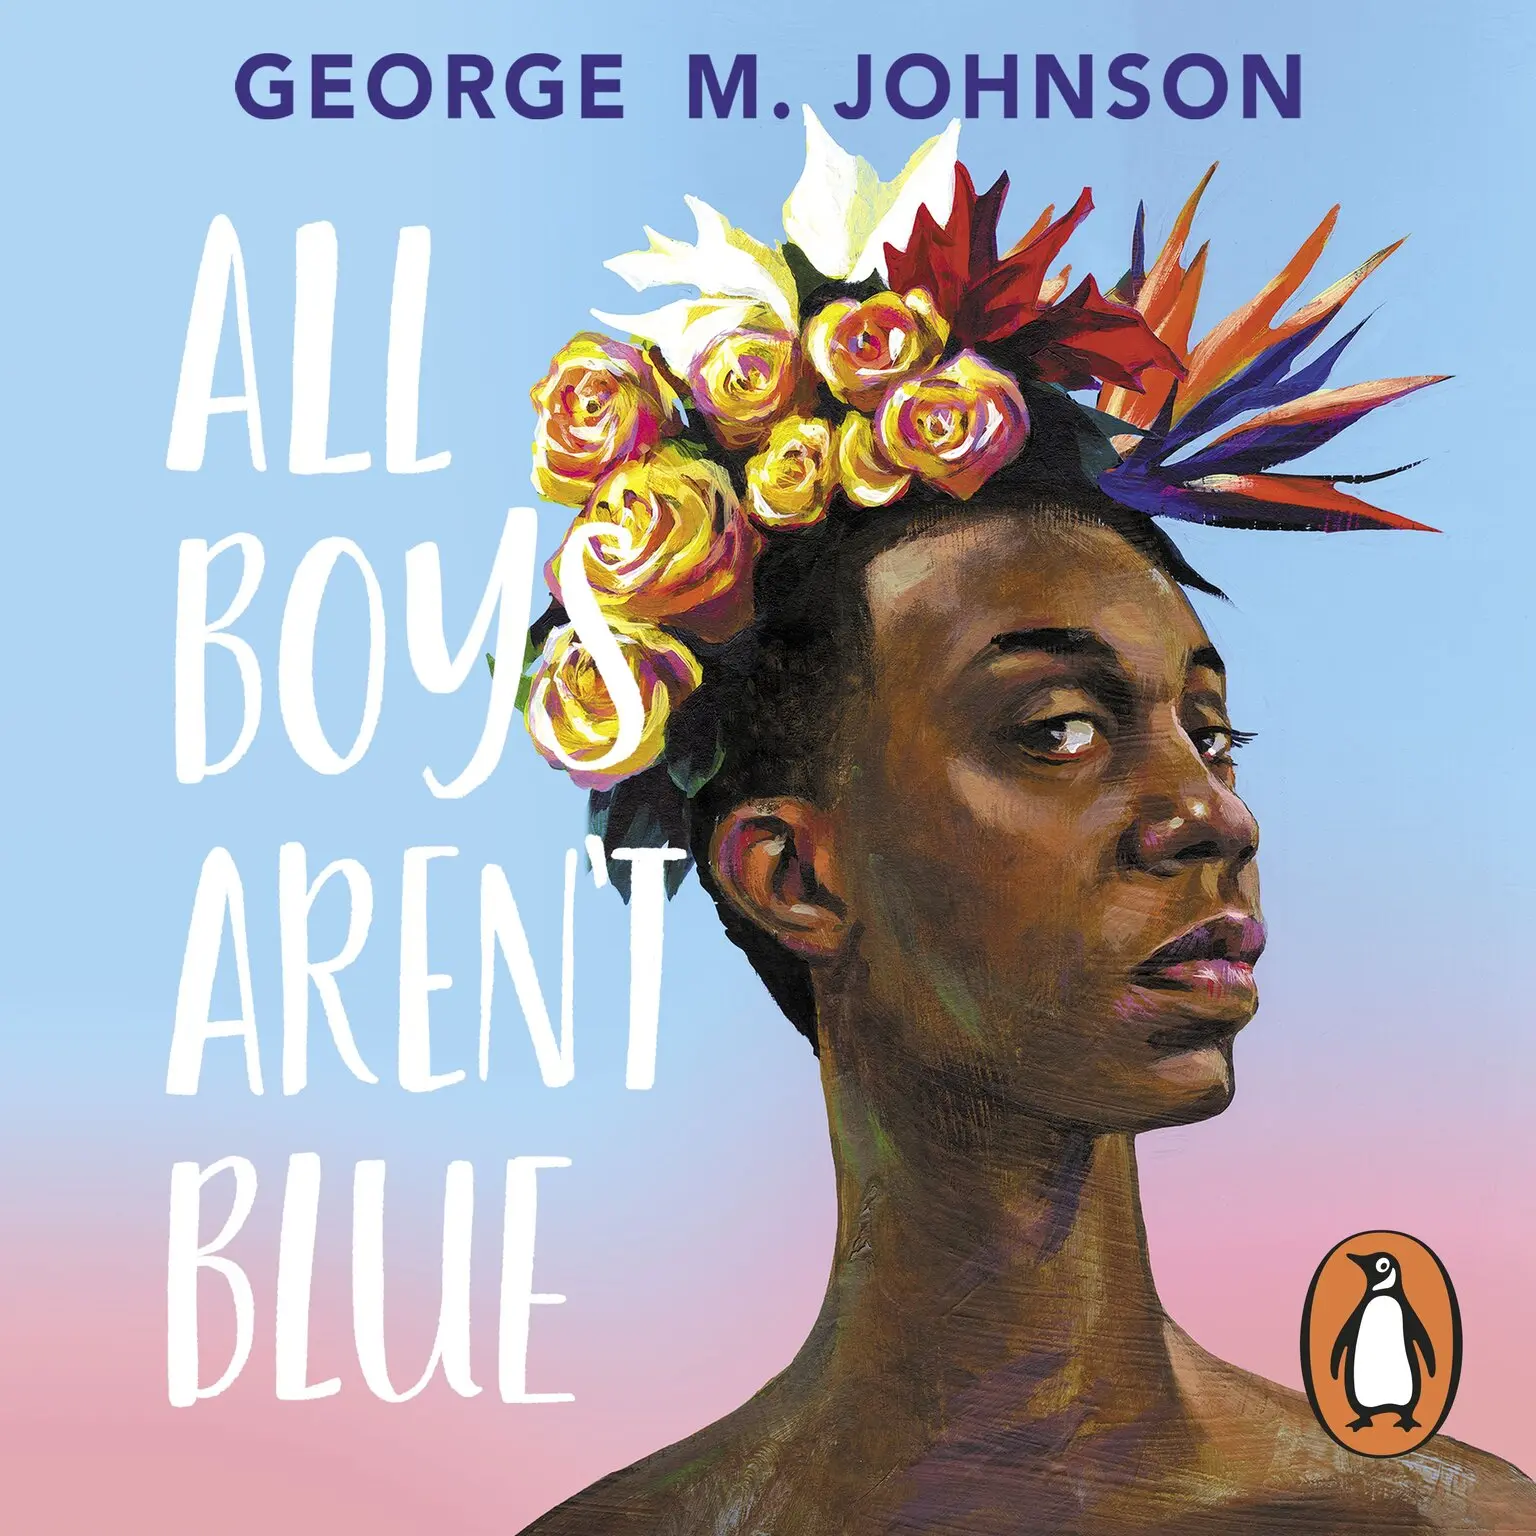 All Boys Aren't Blue (AudiobookFormat, 2021, Penguin Random House Children's UK)